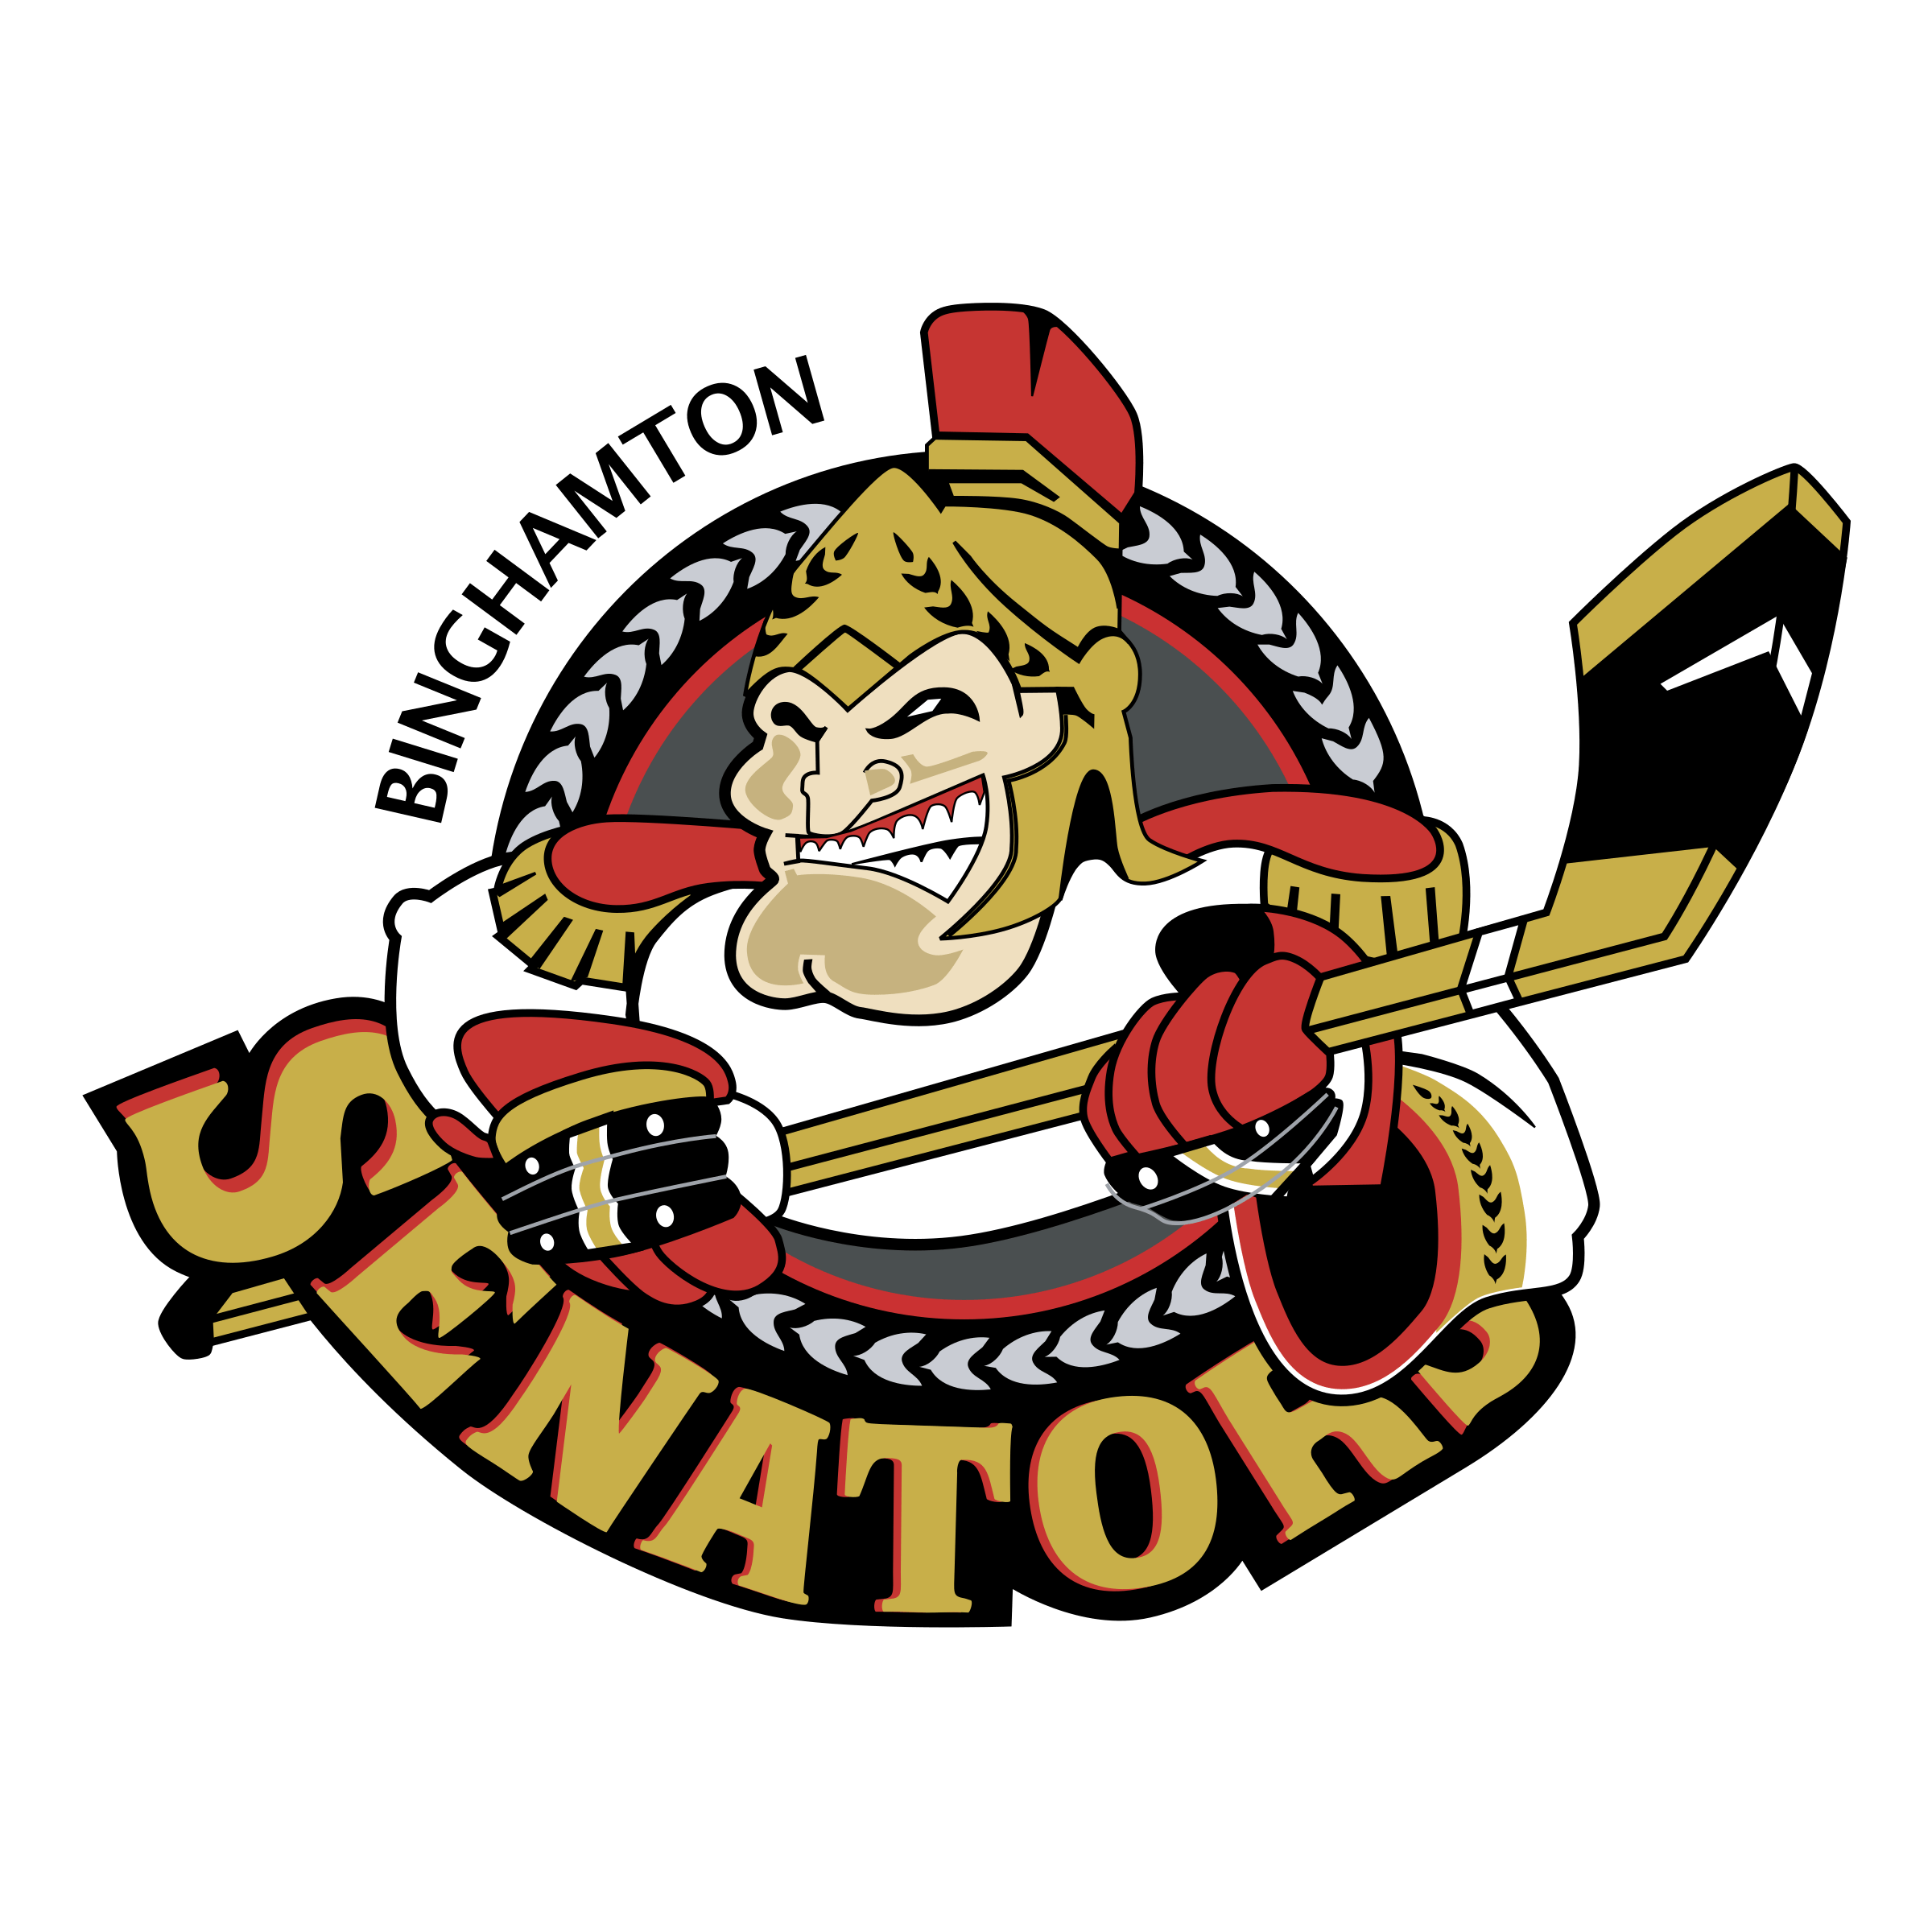 Senators Logo - Binghamton Senators Logo PNG Transparent & SVG Vector